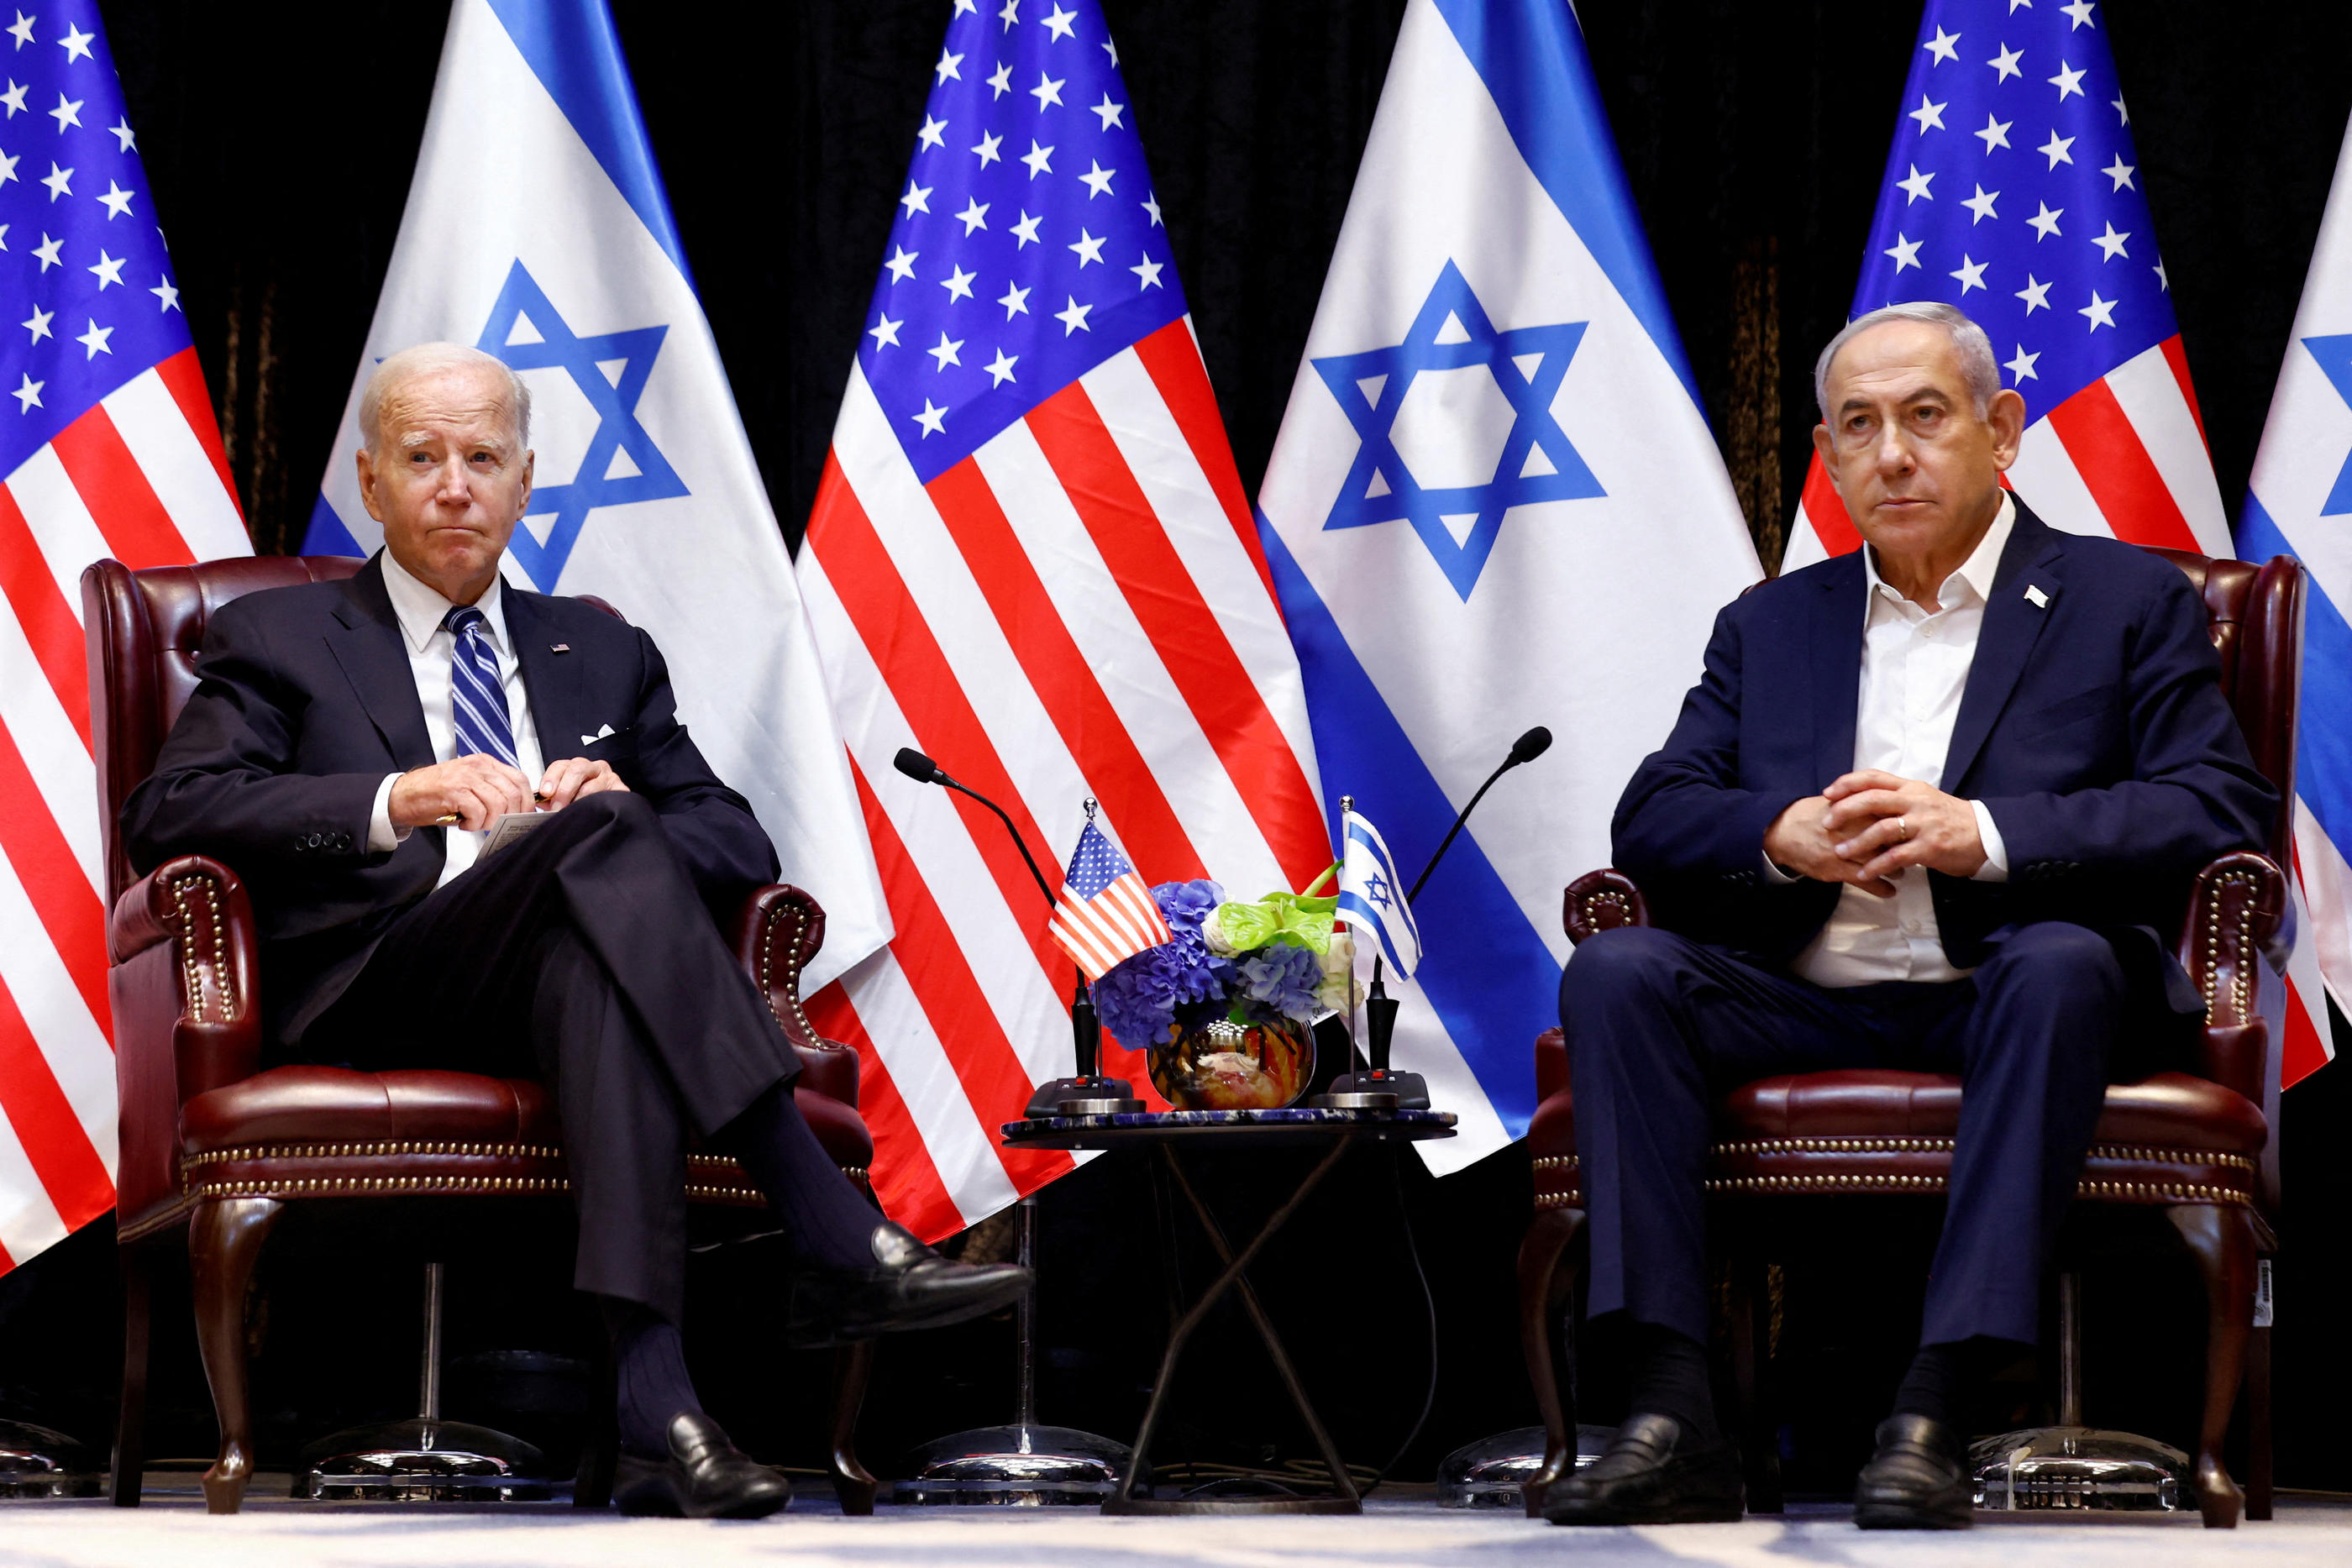 D'après un sondage commandé par la chaîne CBS, 47 % des électeurs démocrates estiment que Washington ne devrait pas envoyer de soutien militaire à Israël. REUTERS/Evelyn Hockstein